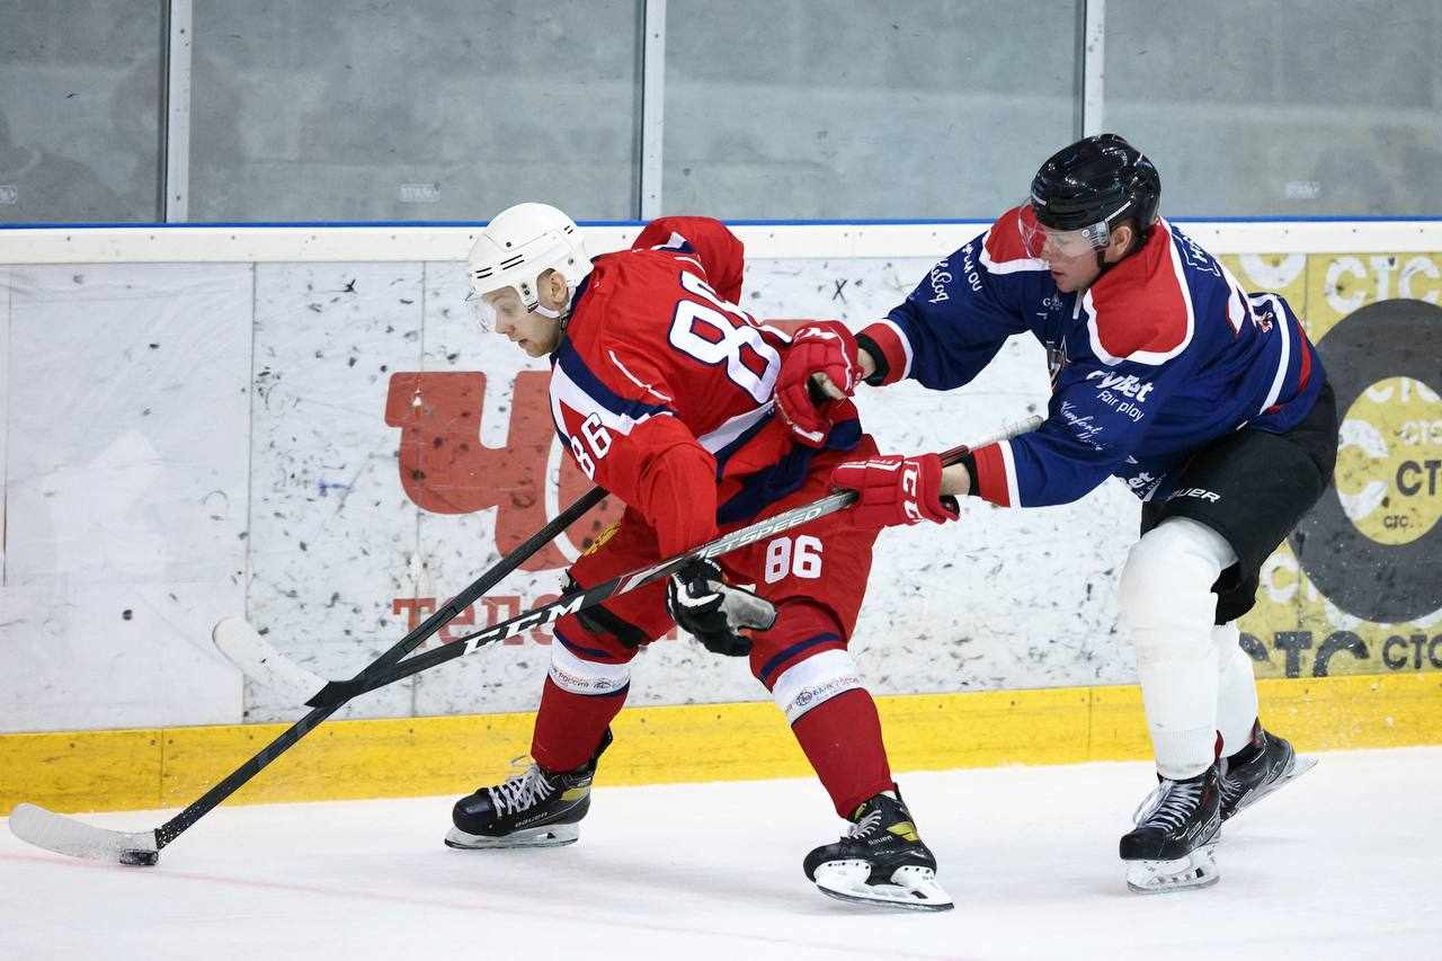 Из интернета удалены почти все фотографии участия в российском турнире команды Narva Stars, но некоторые снимки все еще можно найти в Telegram ХК Санкт-Петербургской хоккейной лиги.